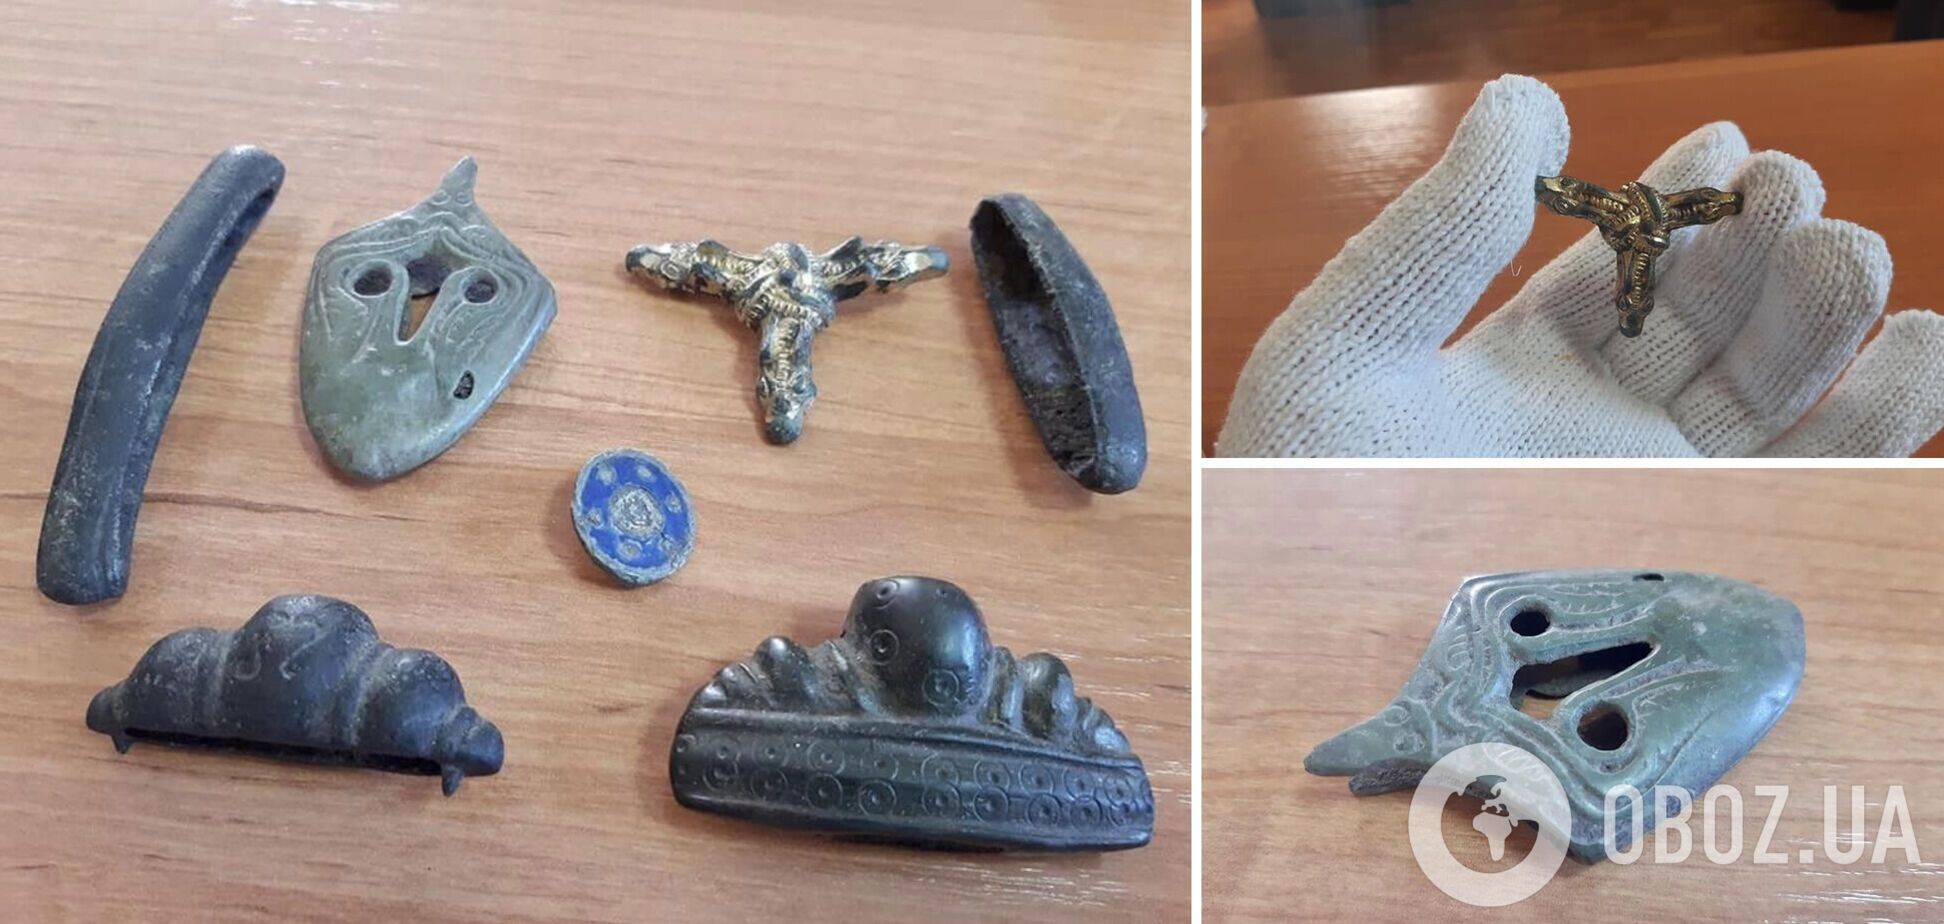 Таможенники обнаружили в посылке артефакты времен Киевской Руси